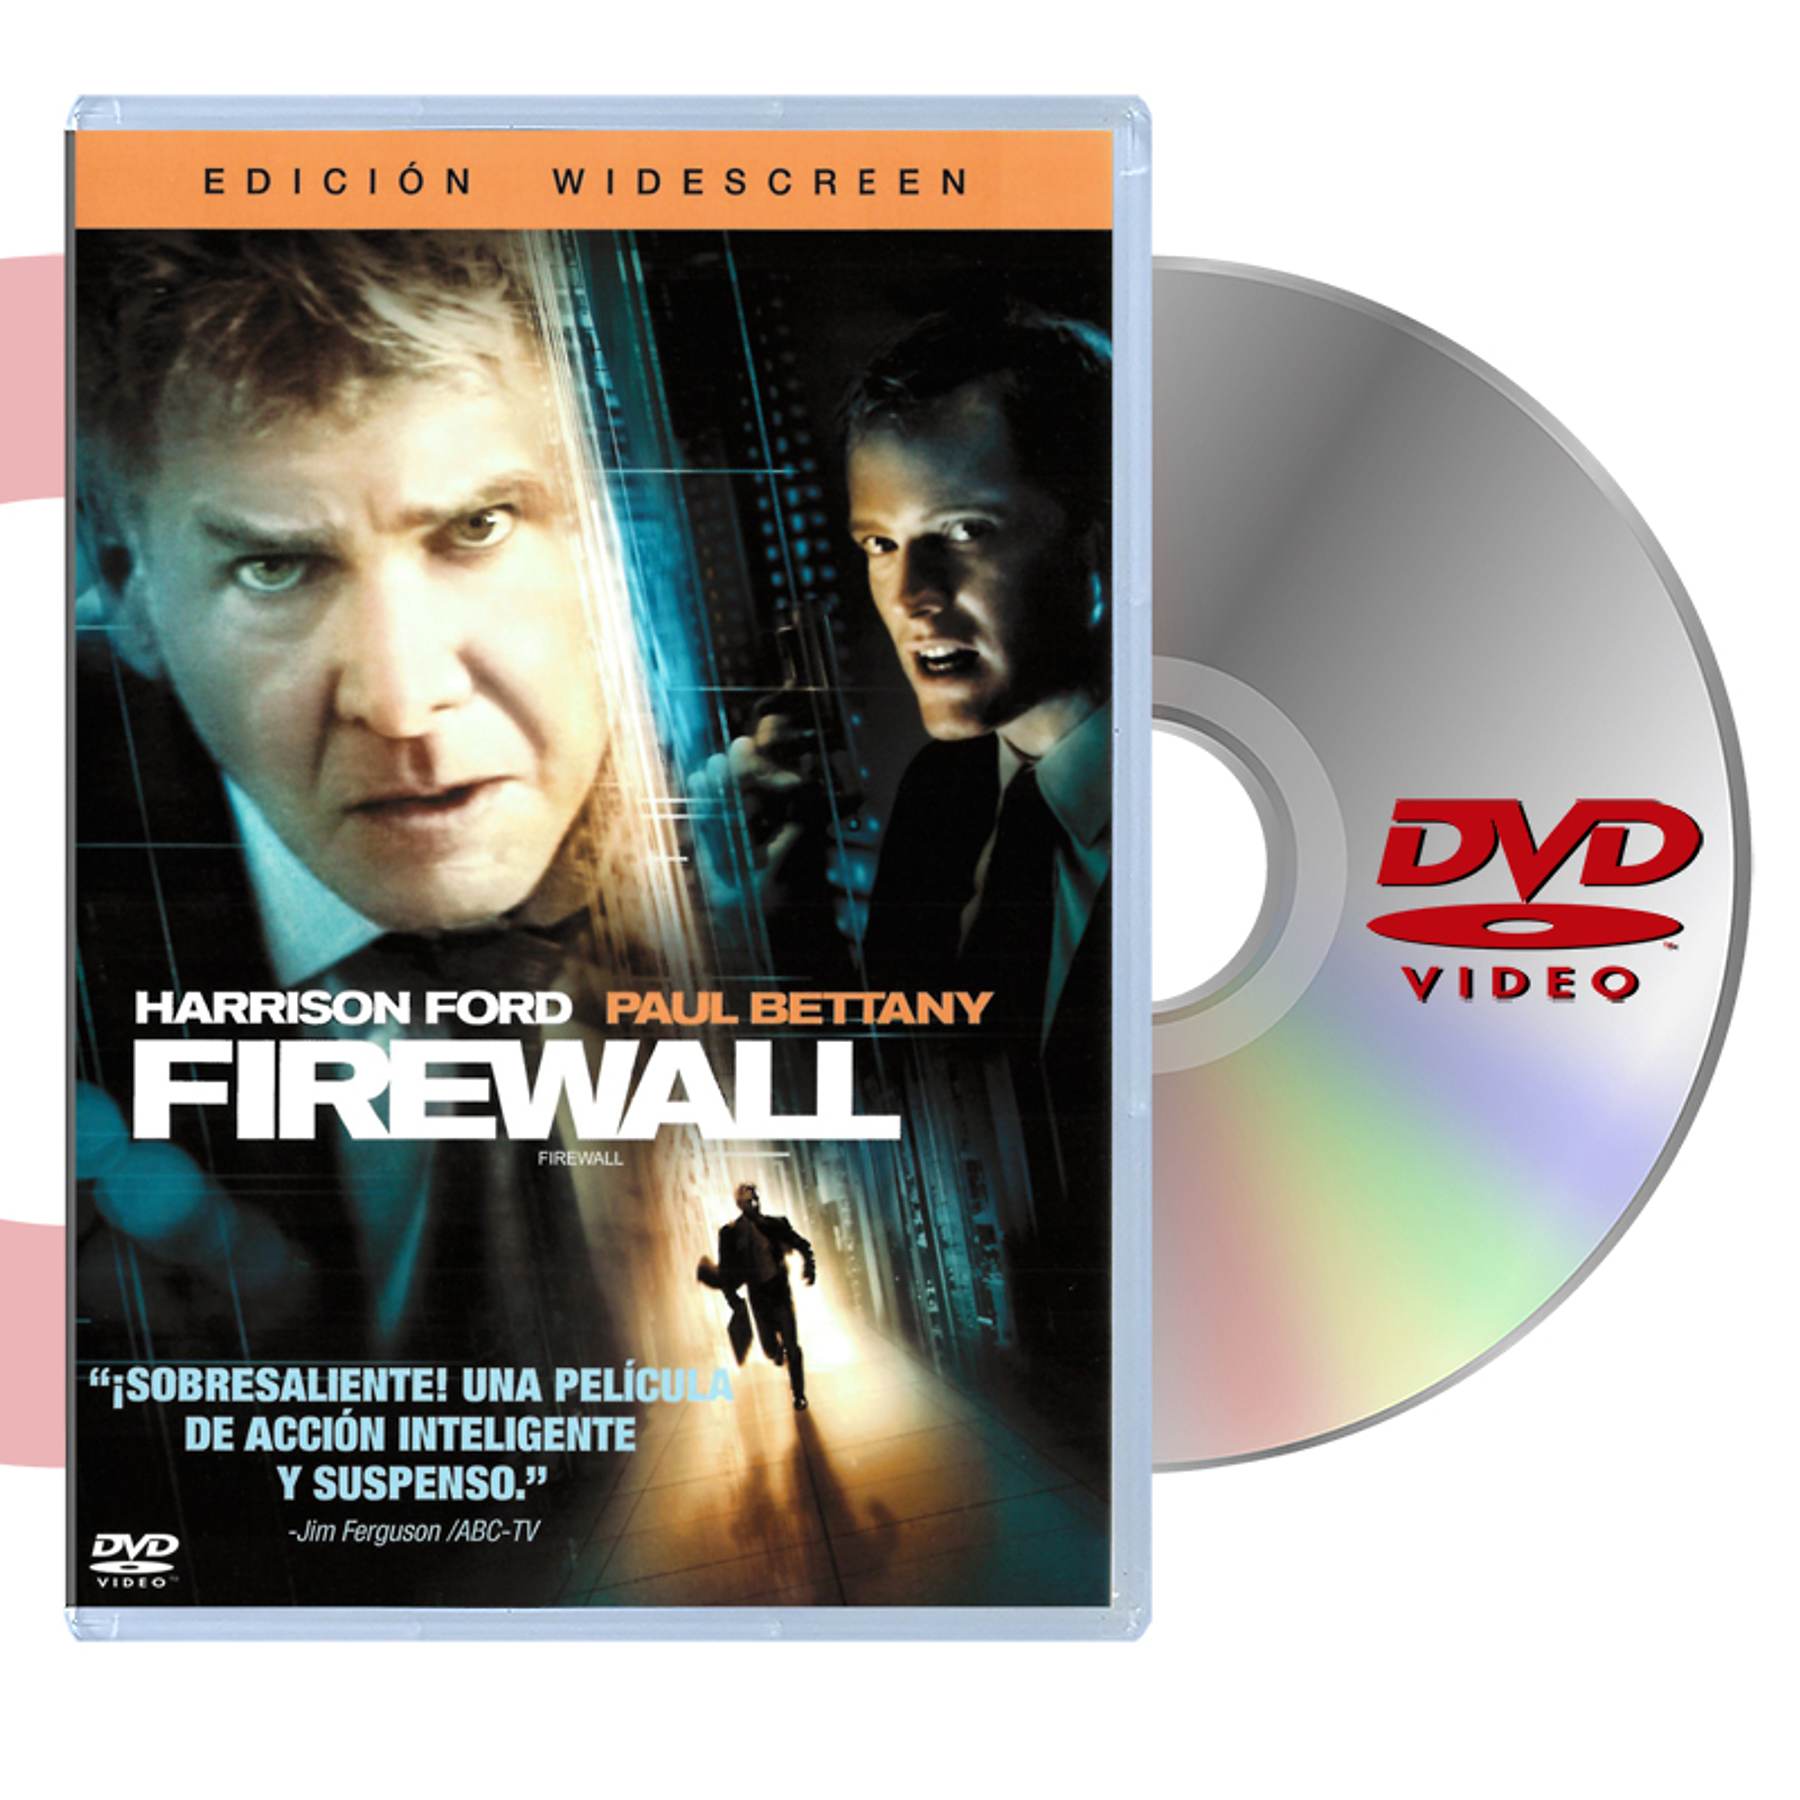 DVD FIREWALL